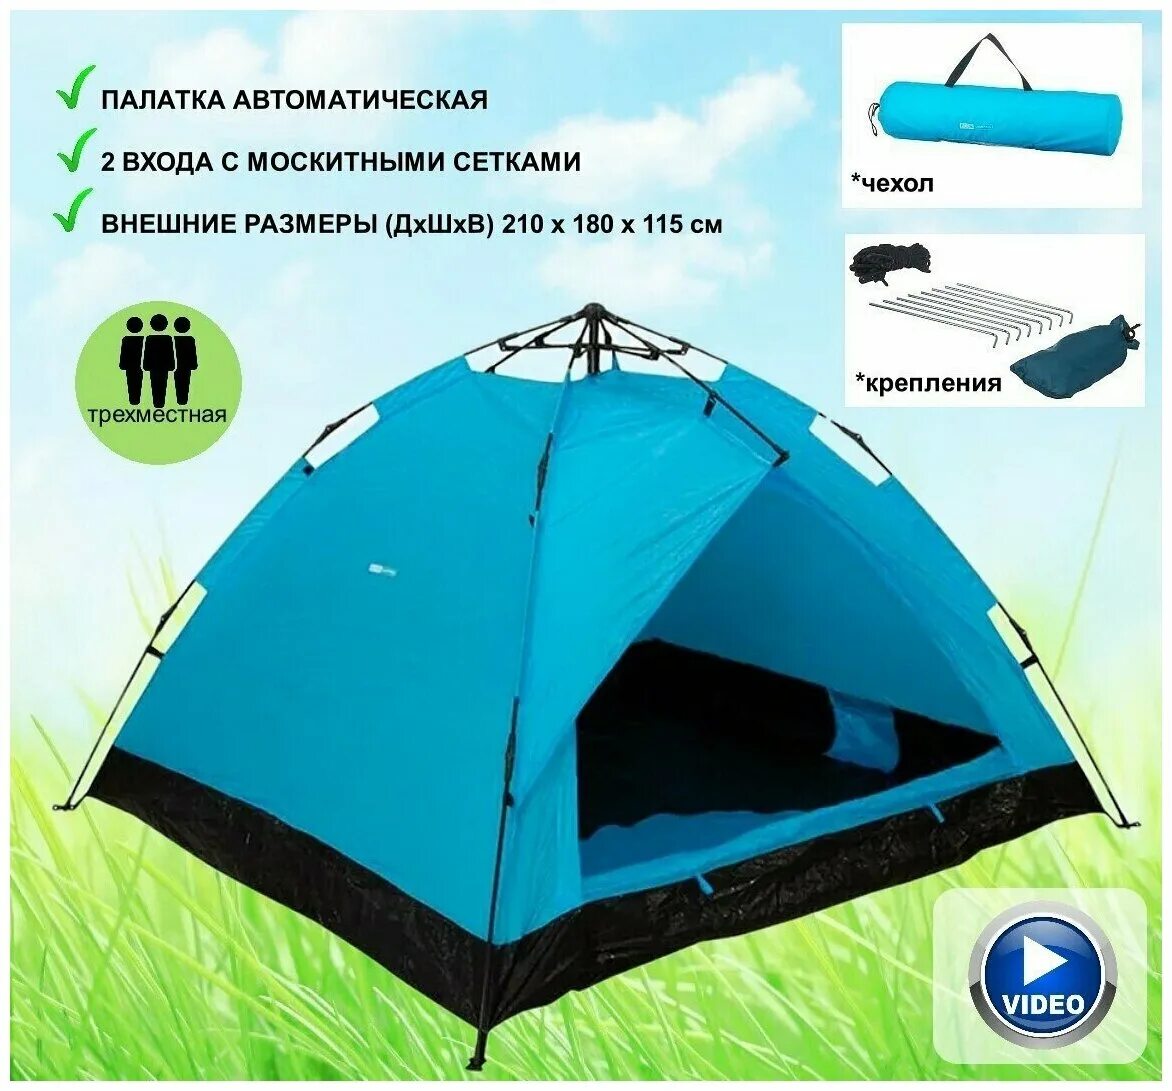 Палатка трекинговая трехместная Ecos. Автоматическая палатка Ecos Breeze. Палатка Ecos Camping. Шатер Ecos Camping. Ecos camping